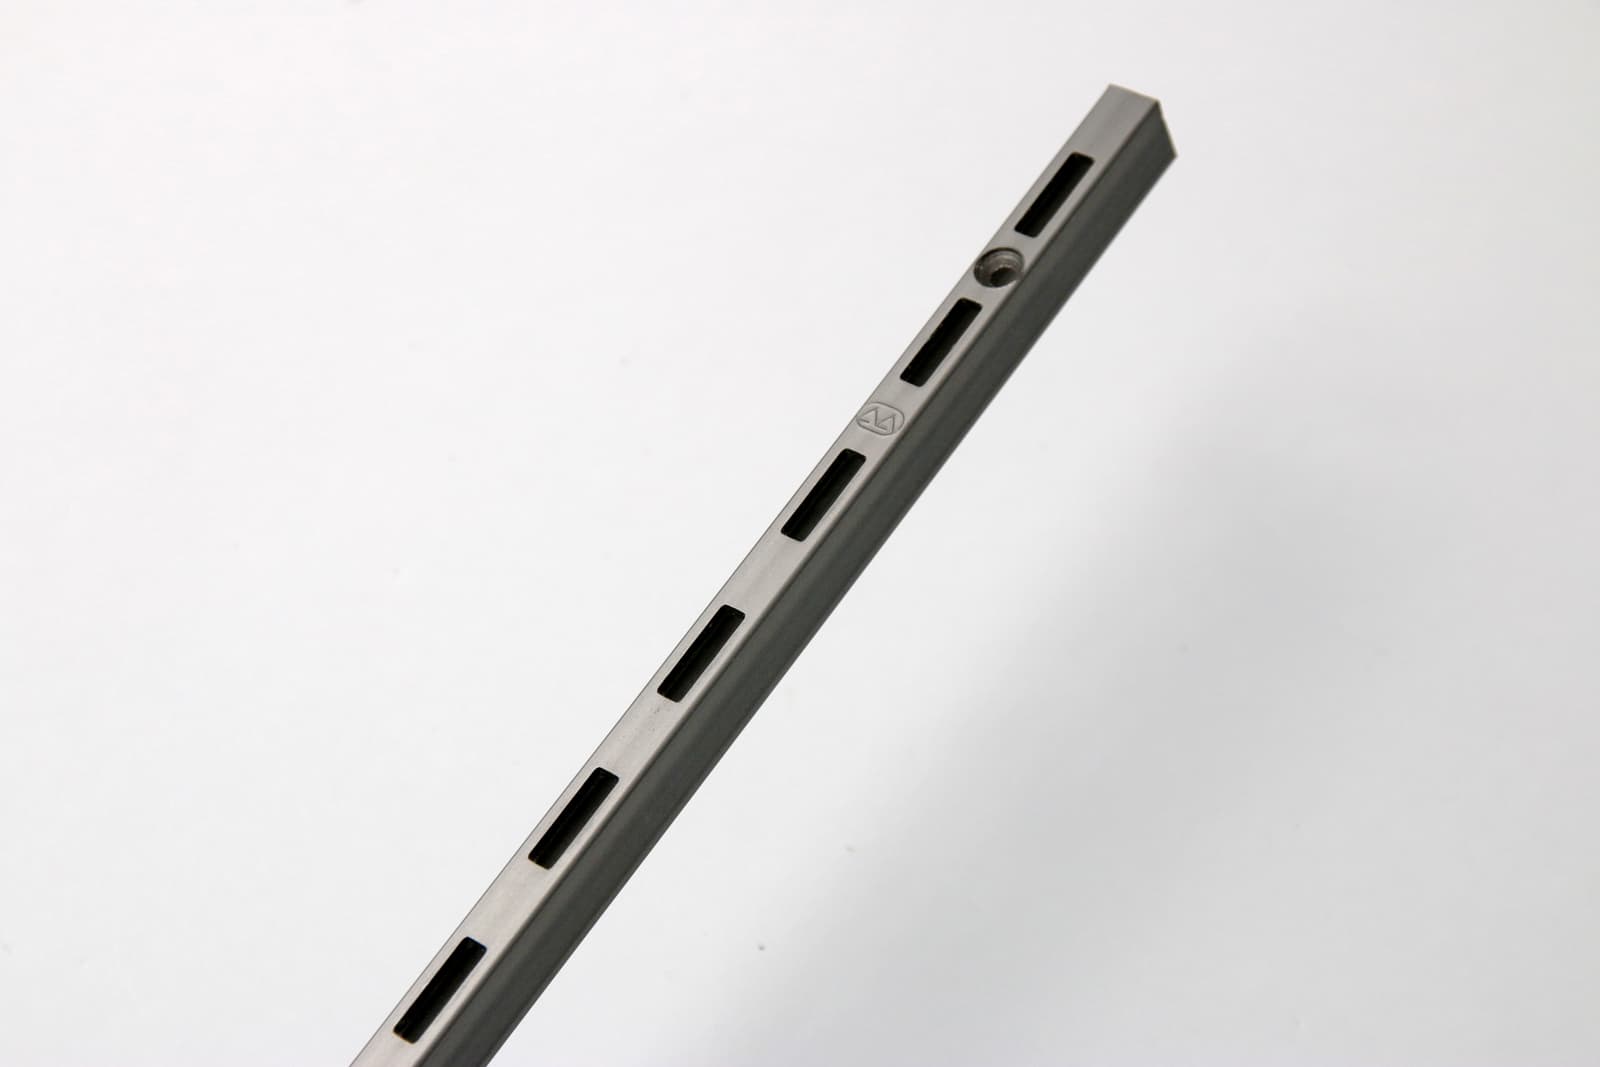 ウォールディスプレイパーツ レール シングル L900 PS-BK007-03-G207 マットで渋い表情を持つ「サンセン材」と呼ばれる鉄材